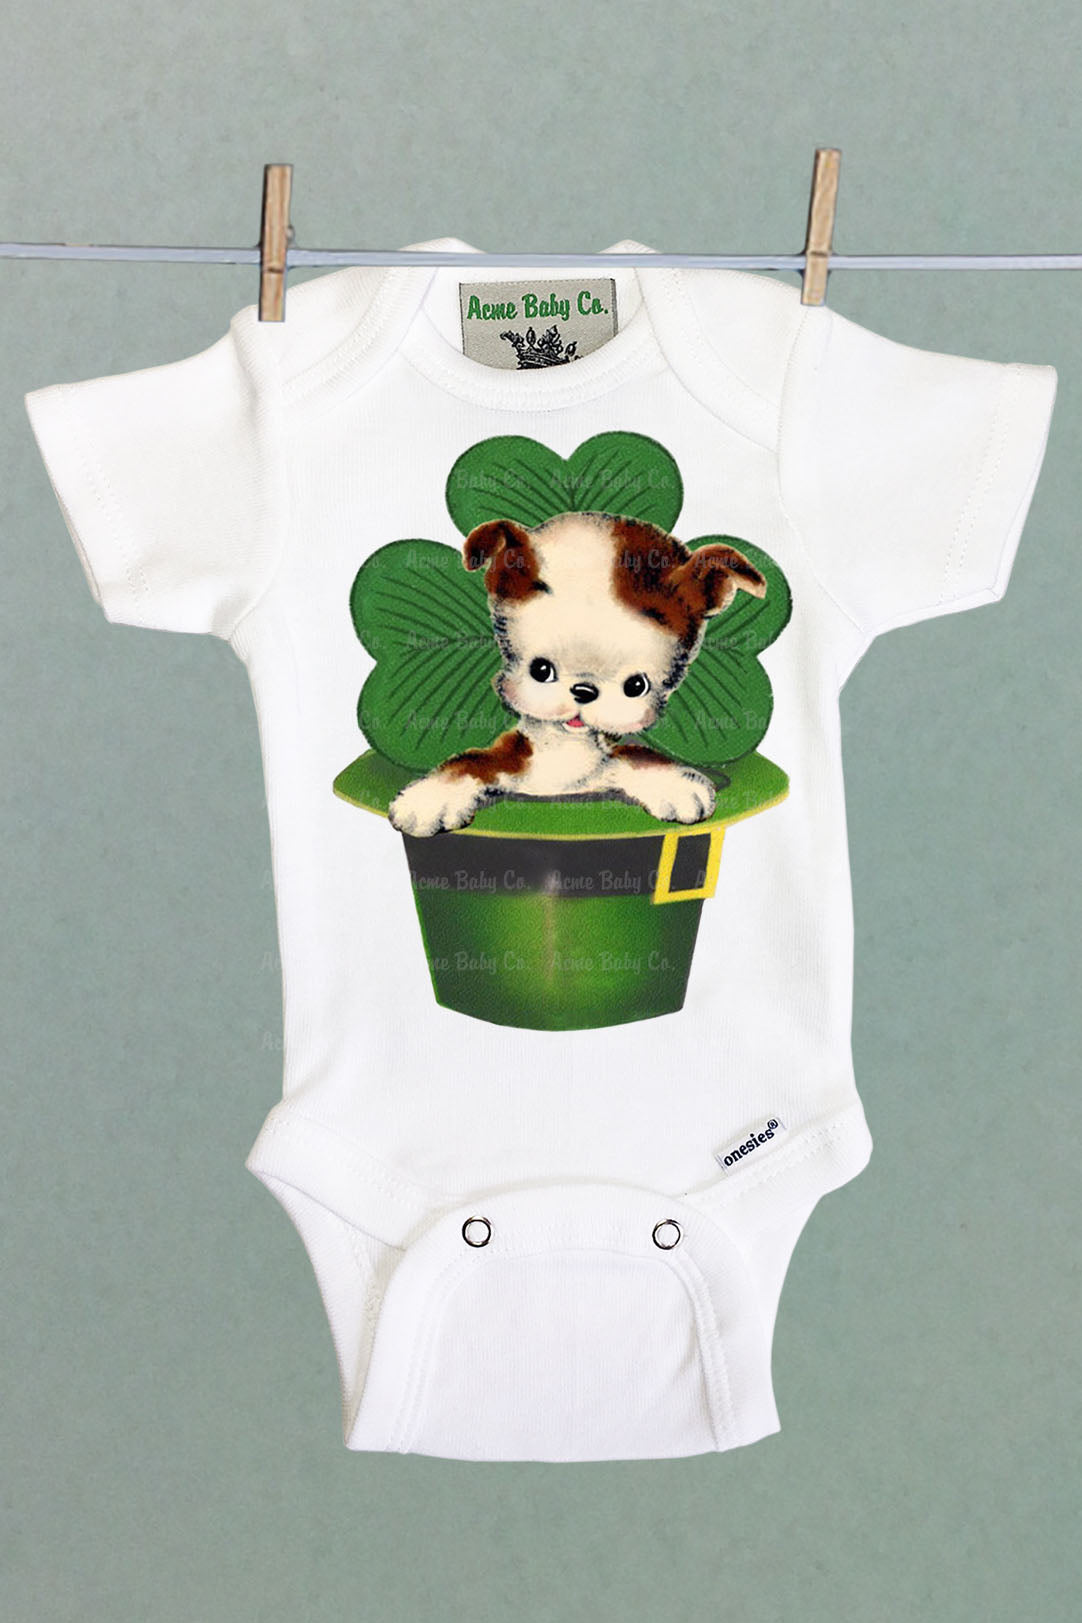 Irish Puppy Dog One Piece Baby Bodysuit